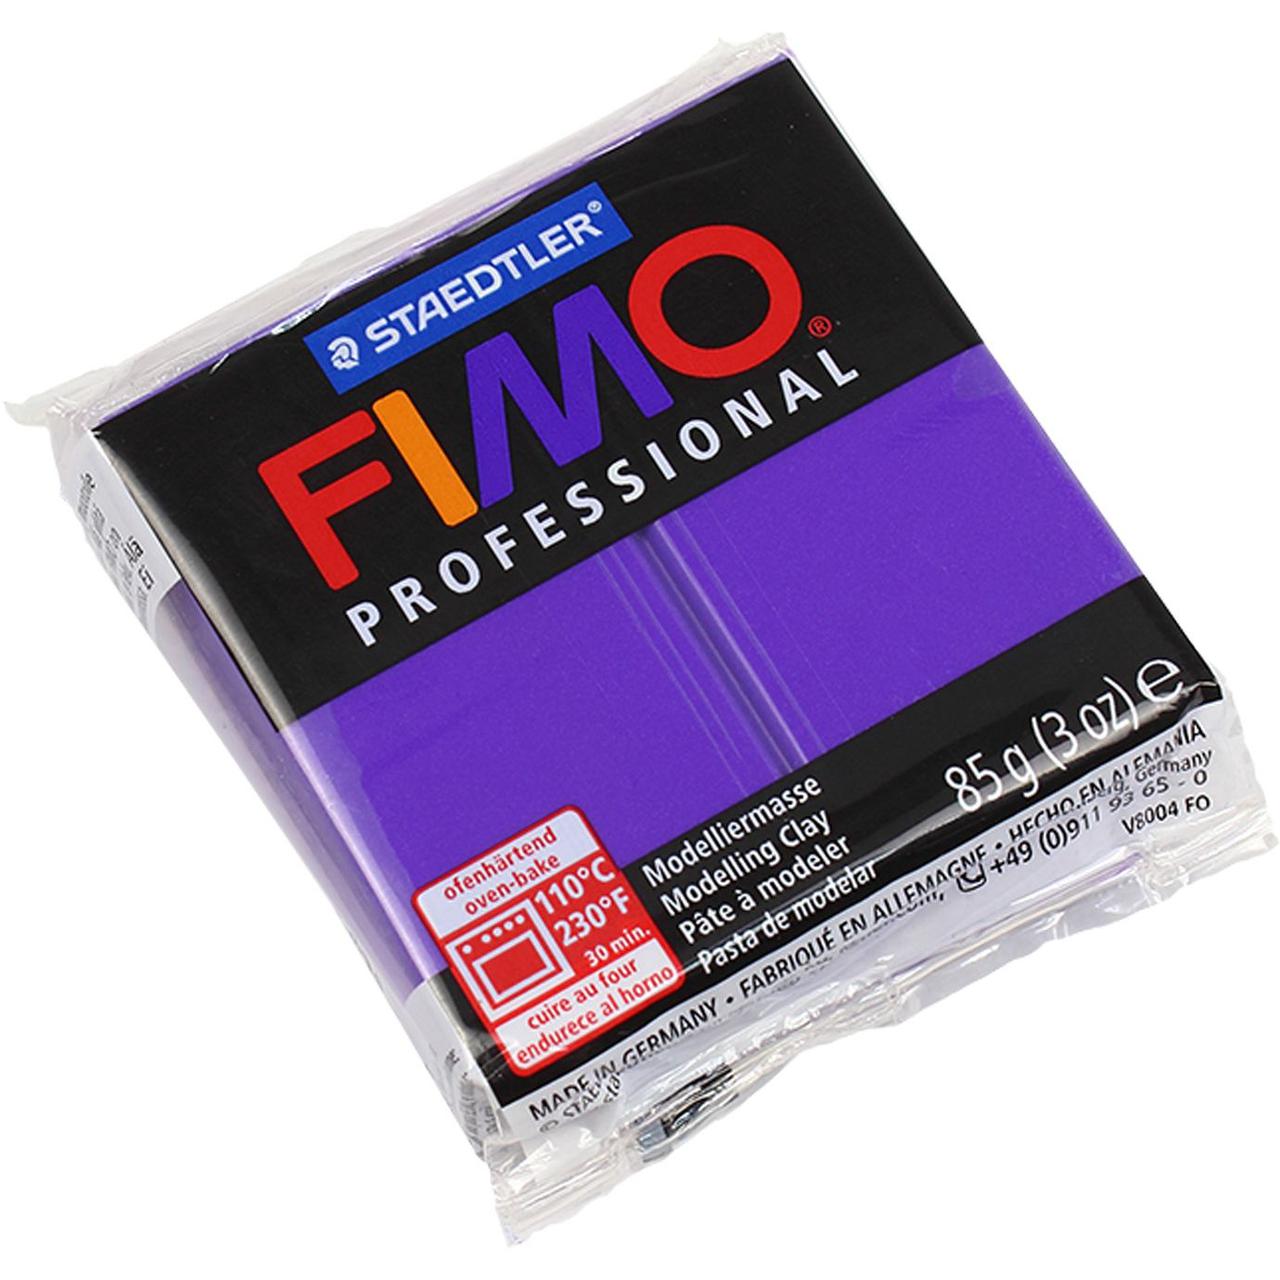 Глина полимерная Professional, запекаемая, 85 грамм, фиолетовый Staedtler (FIMO 8004-61)